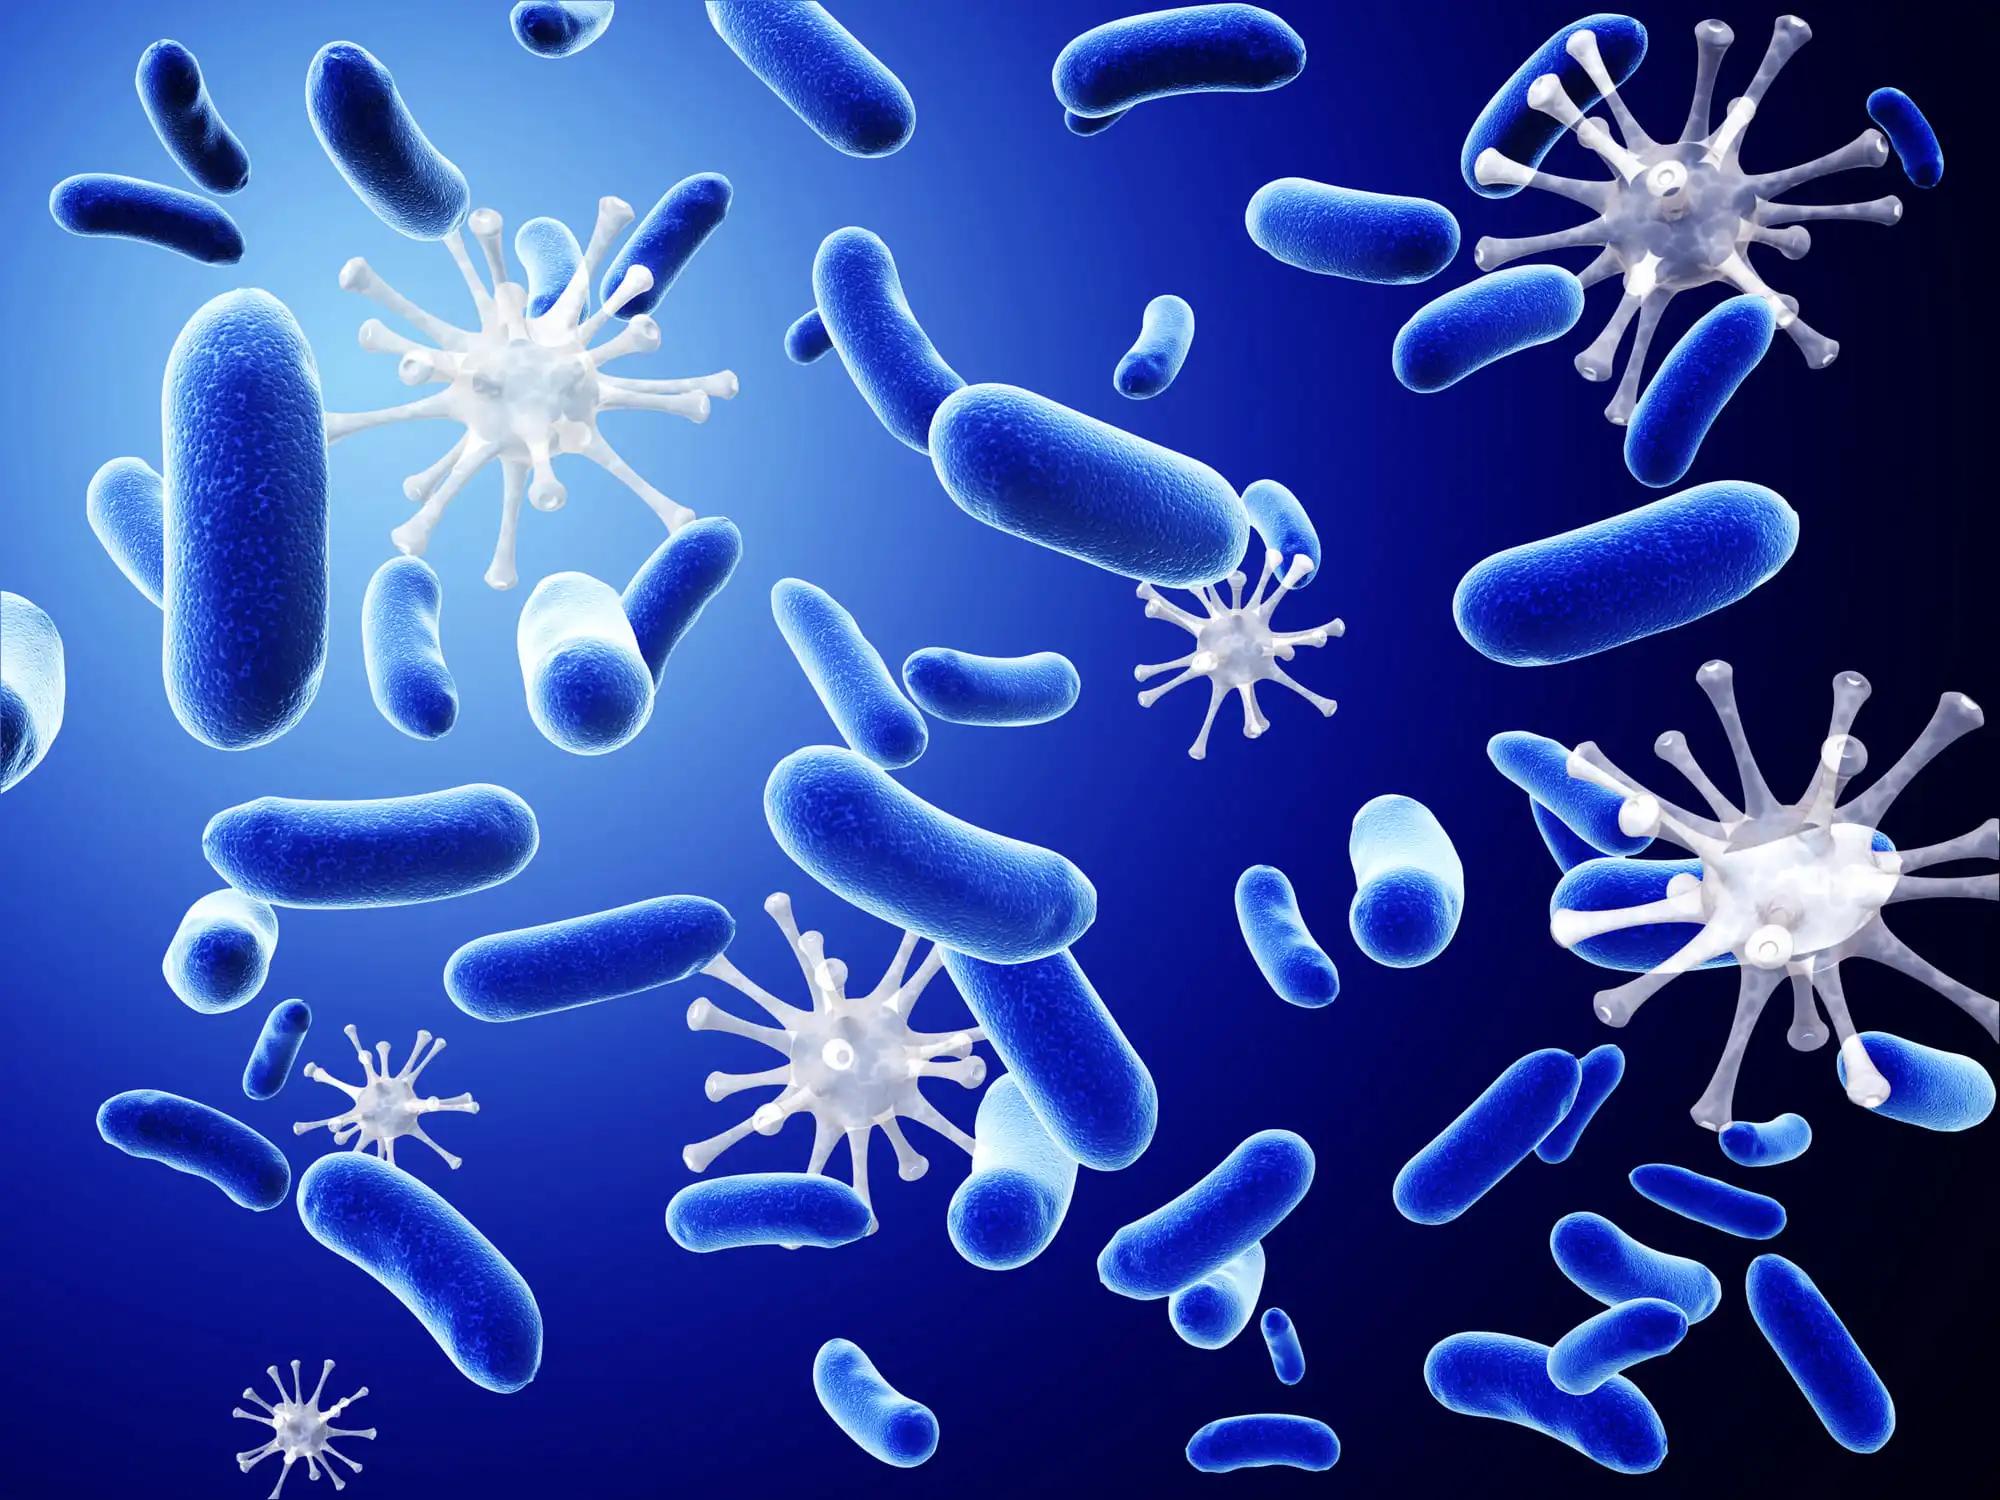 3D Render Pathogen Bacteria and Viruses